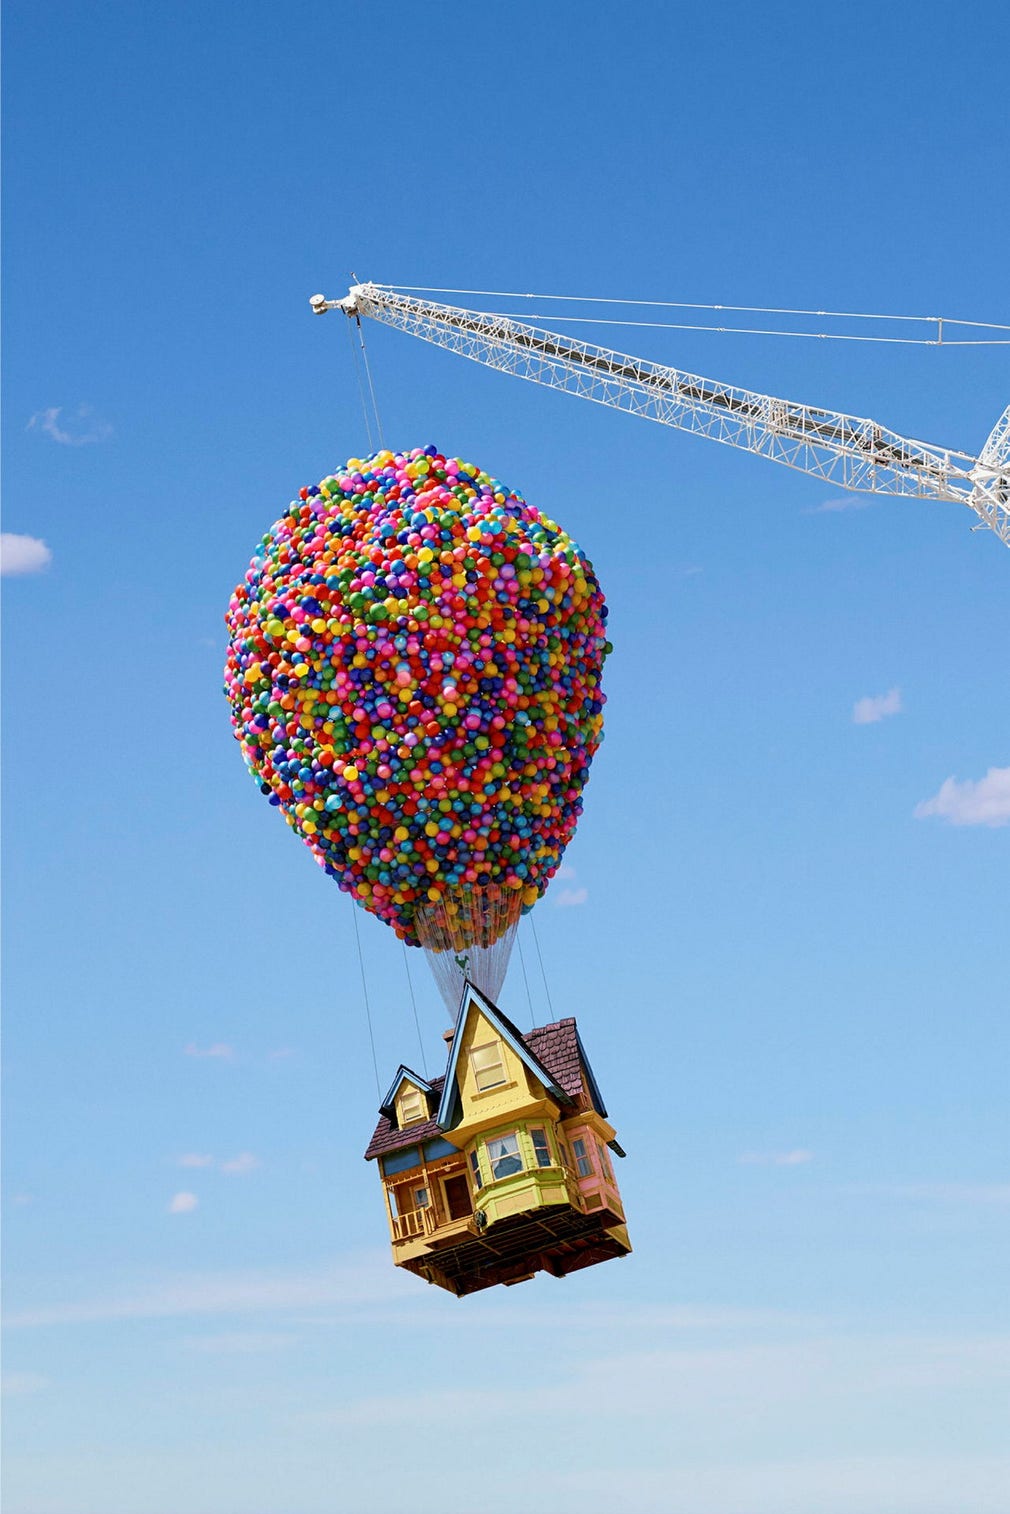 I Mexiko går det att sväva i det ballongupphängda huset från Pixarfilmen ”Upp”.